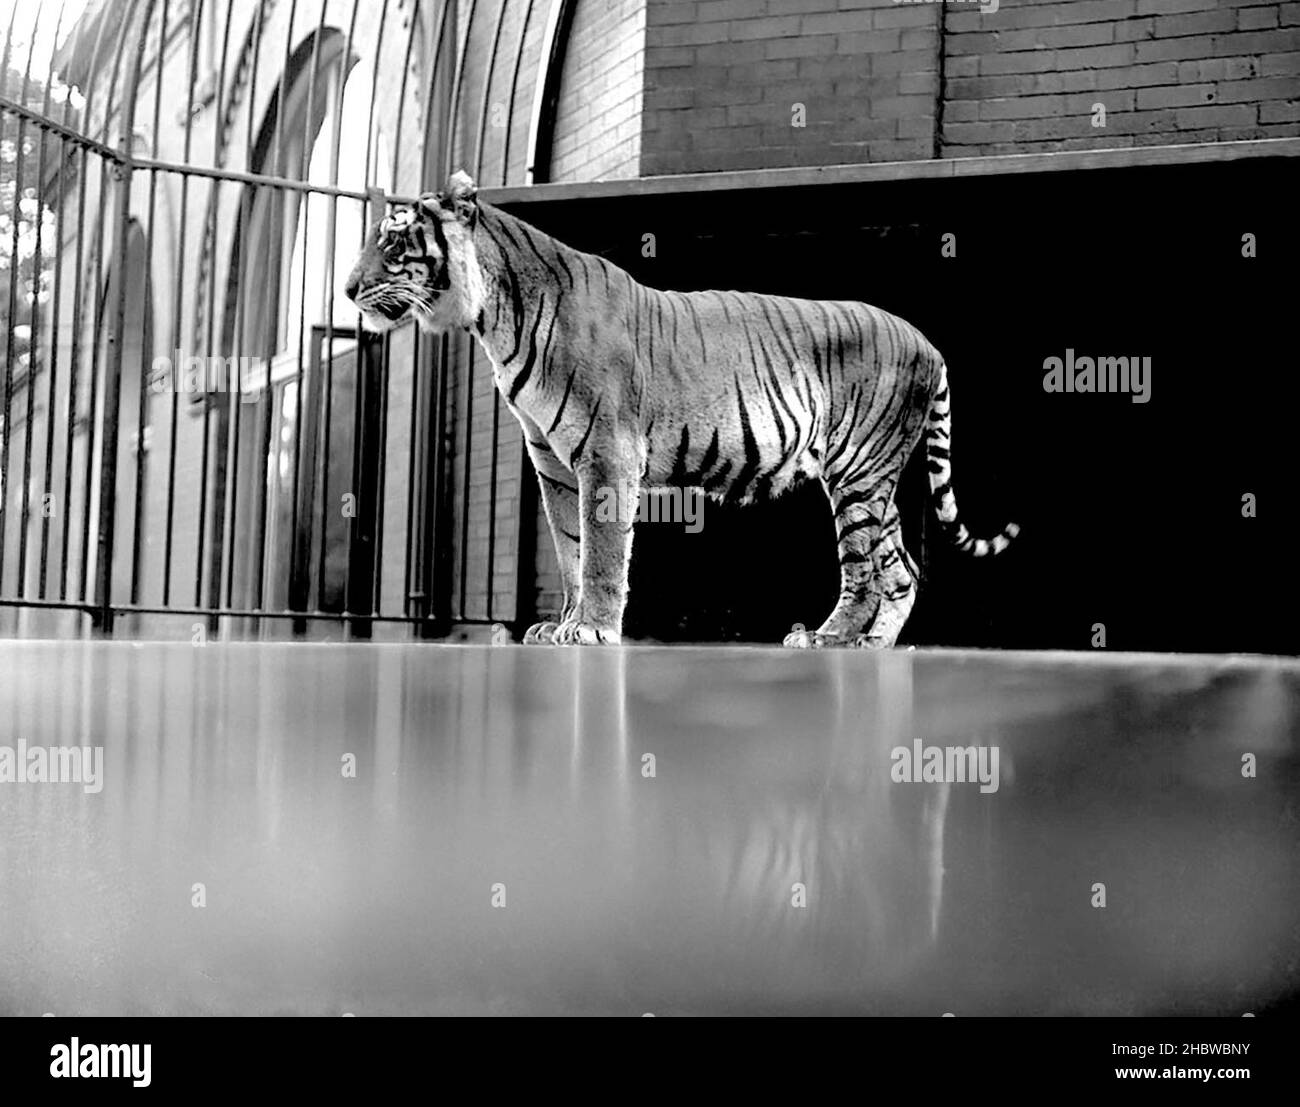 Tigre en cage avec fenêtres et bâtiment derrière au zoo de Lincoln Park CA.1900 Banque D'Images